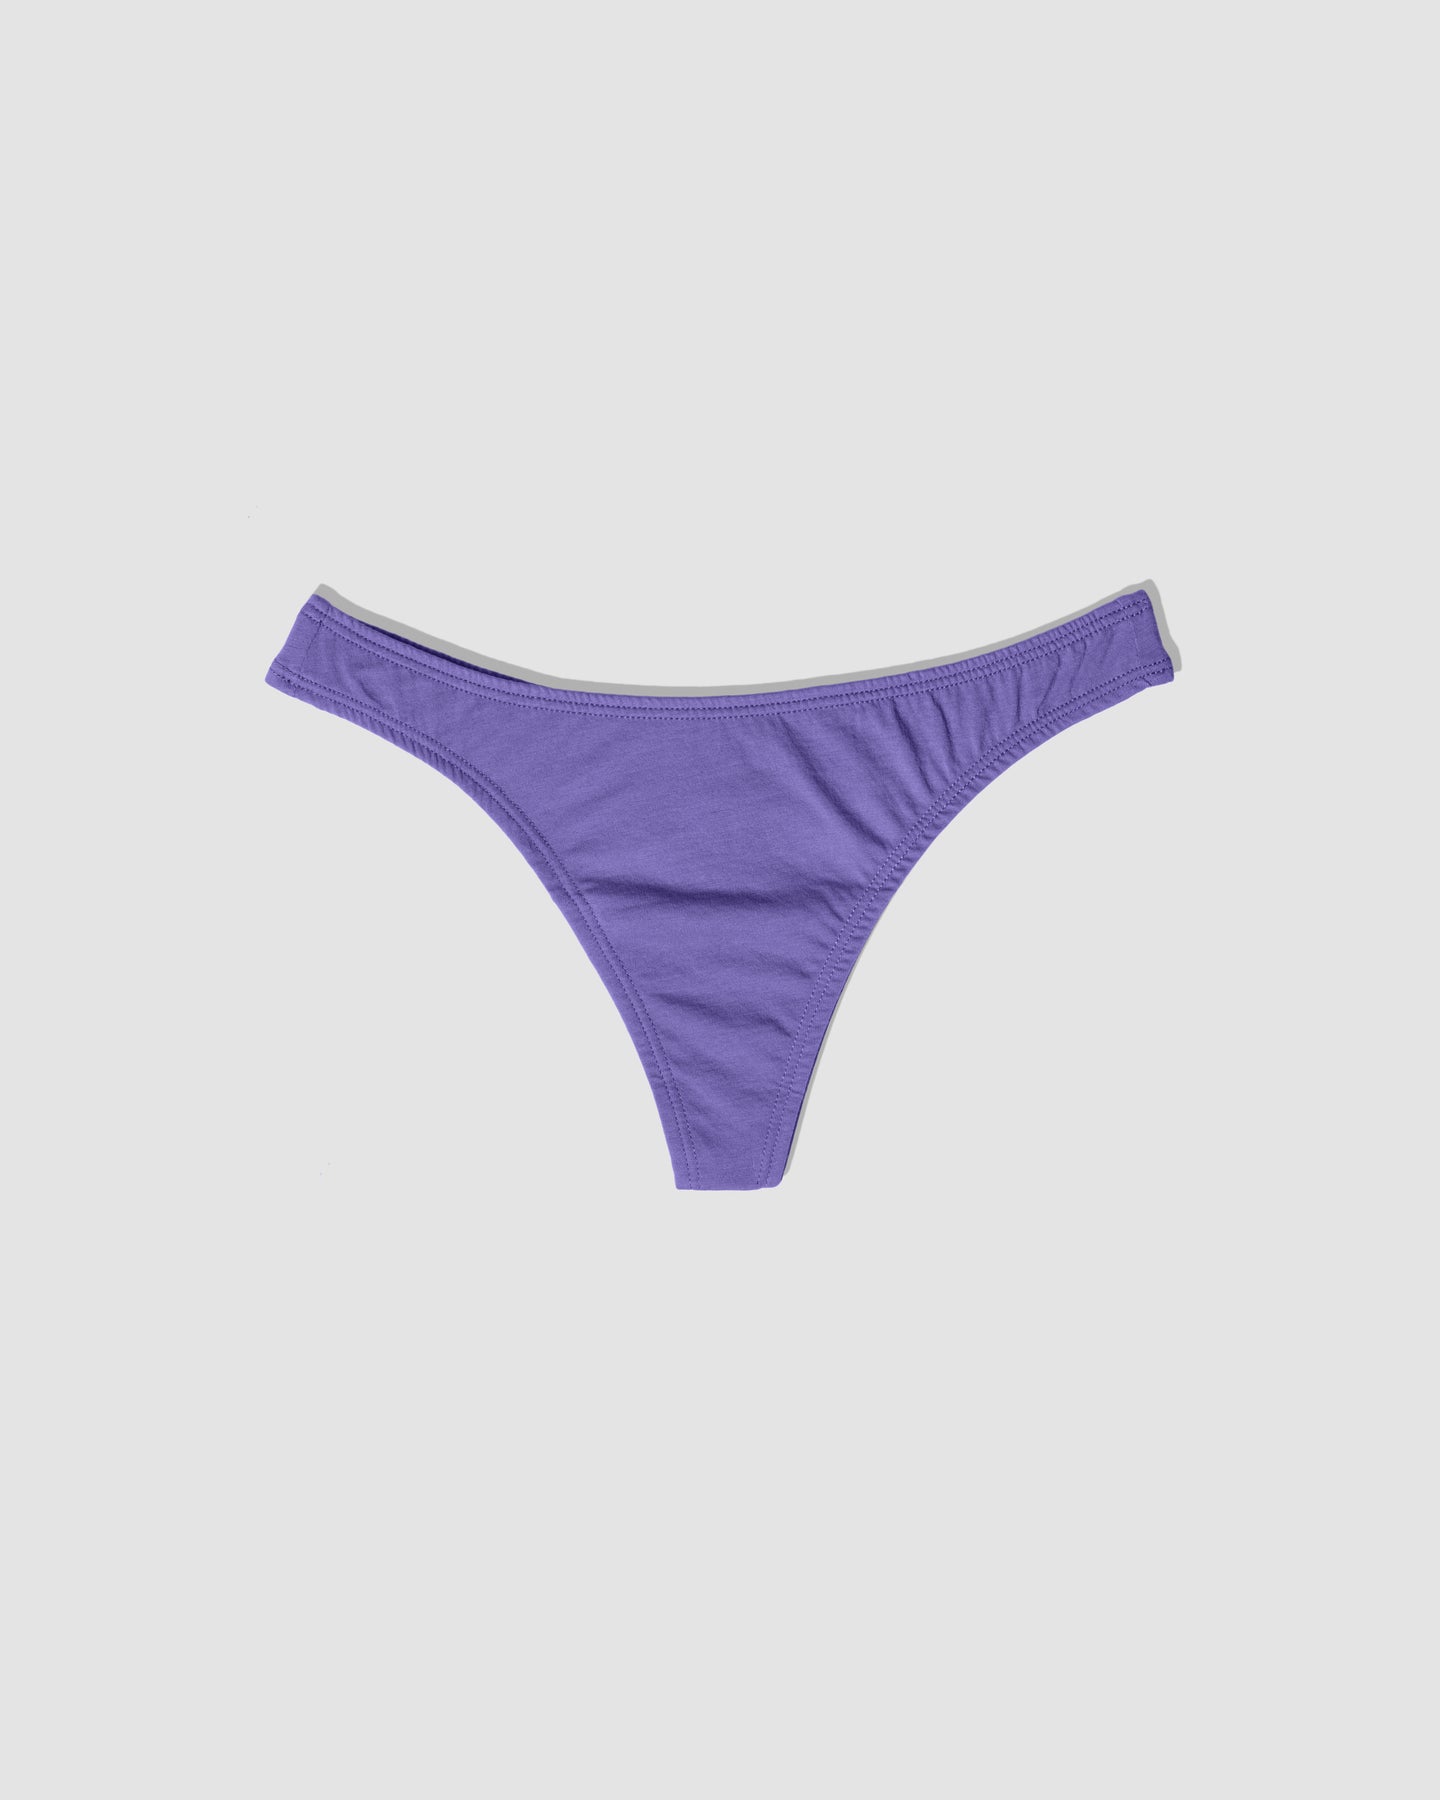 iOPQO Womens Underwear,Cotton Underwear Intimates Womens Underwear Women  Thong Panties Thong Lace Pants Ladies Briefs Underwear Purple One Size